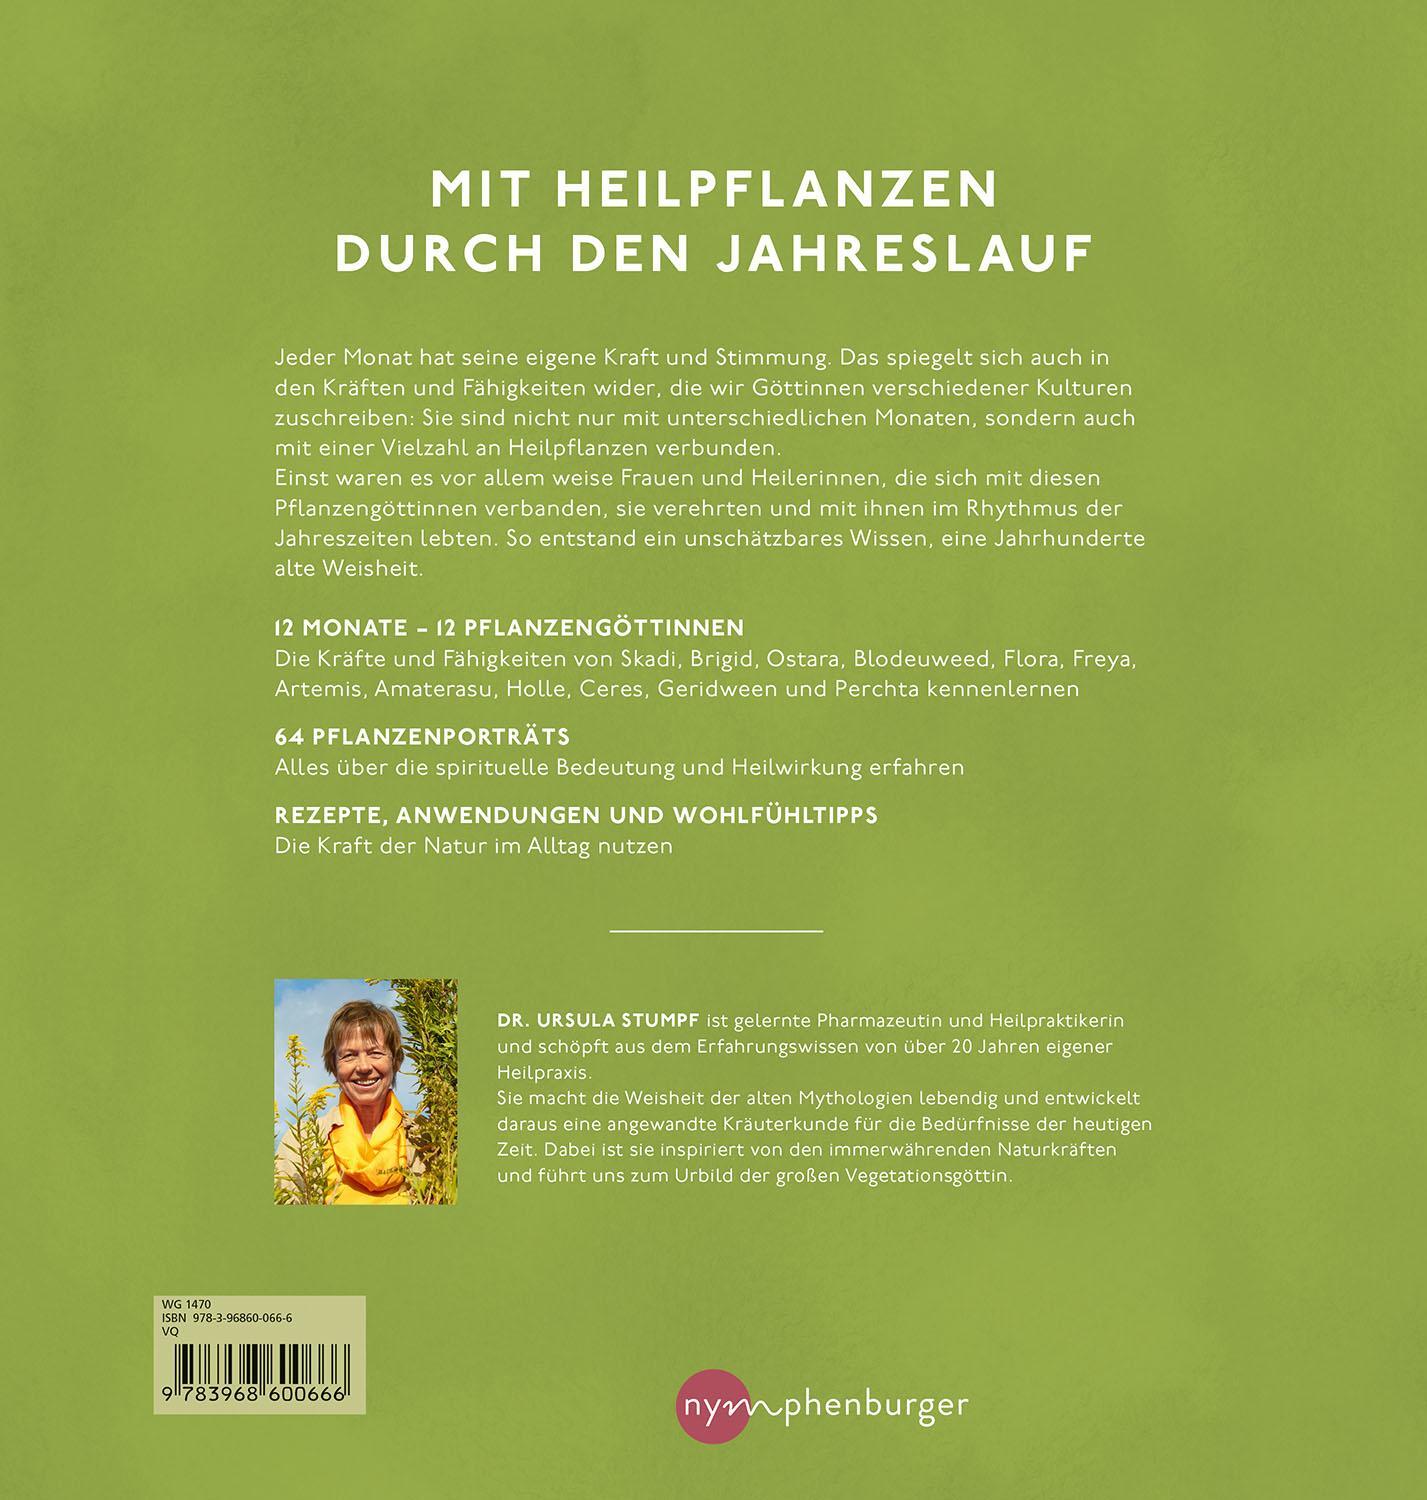 Rückseite: 9783968600666 | Pflanzengöttinnen und ihre Heilkräuter | Ursula Stumpf | Buch | 192 S.